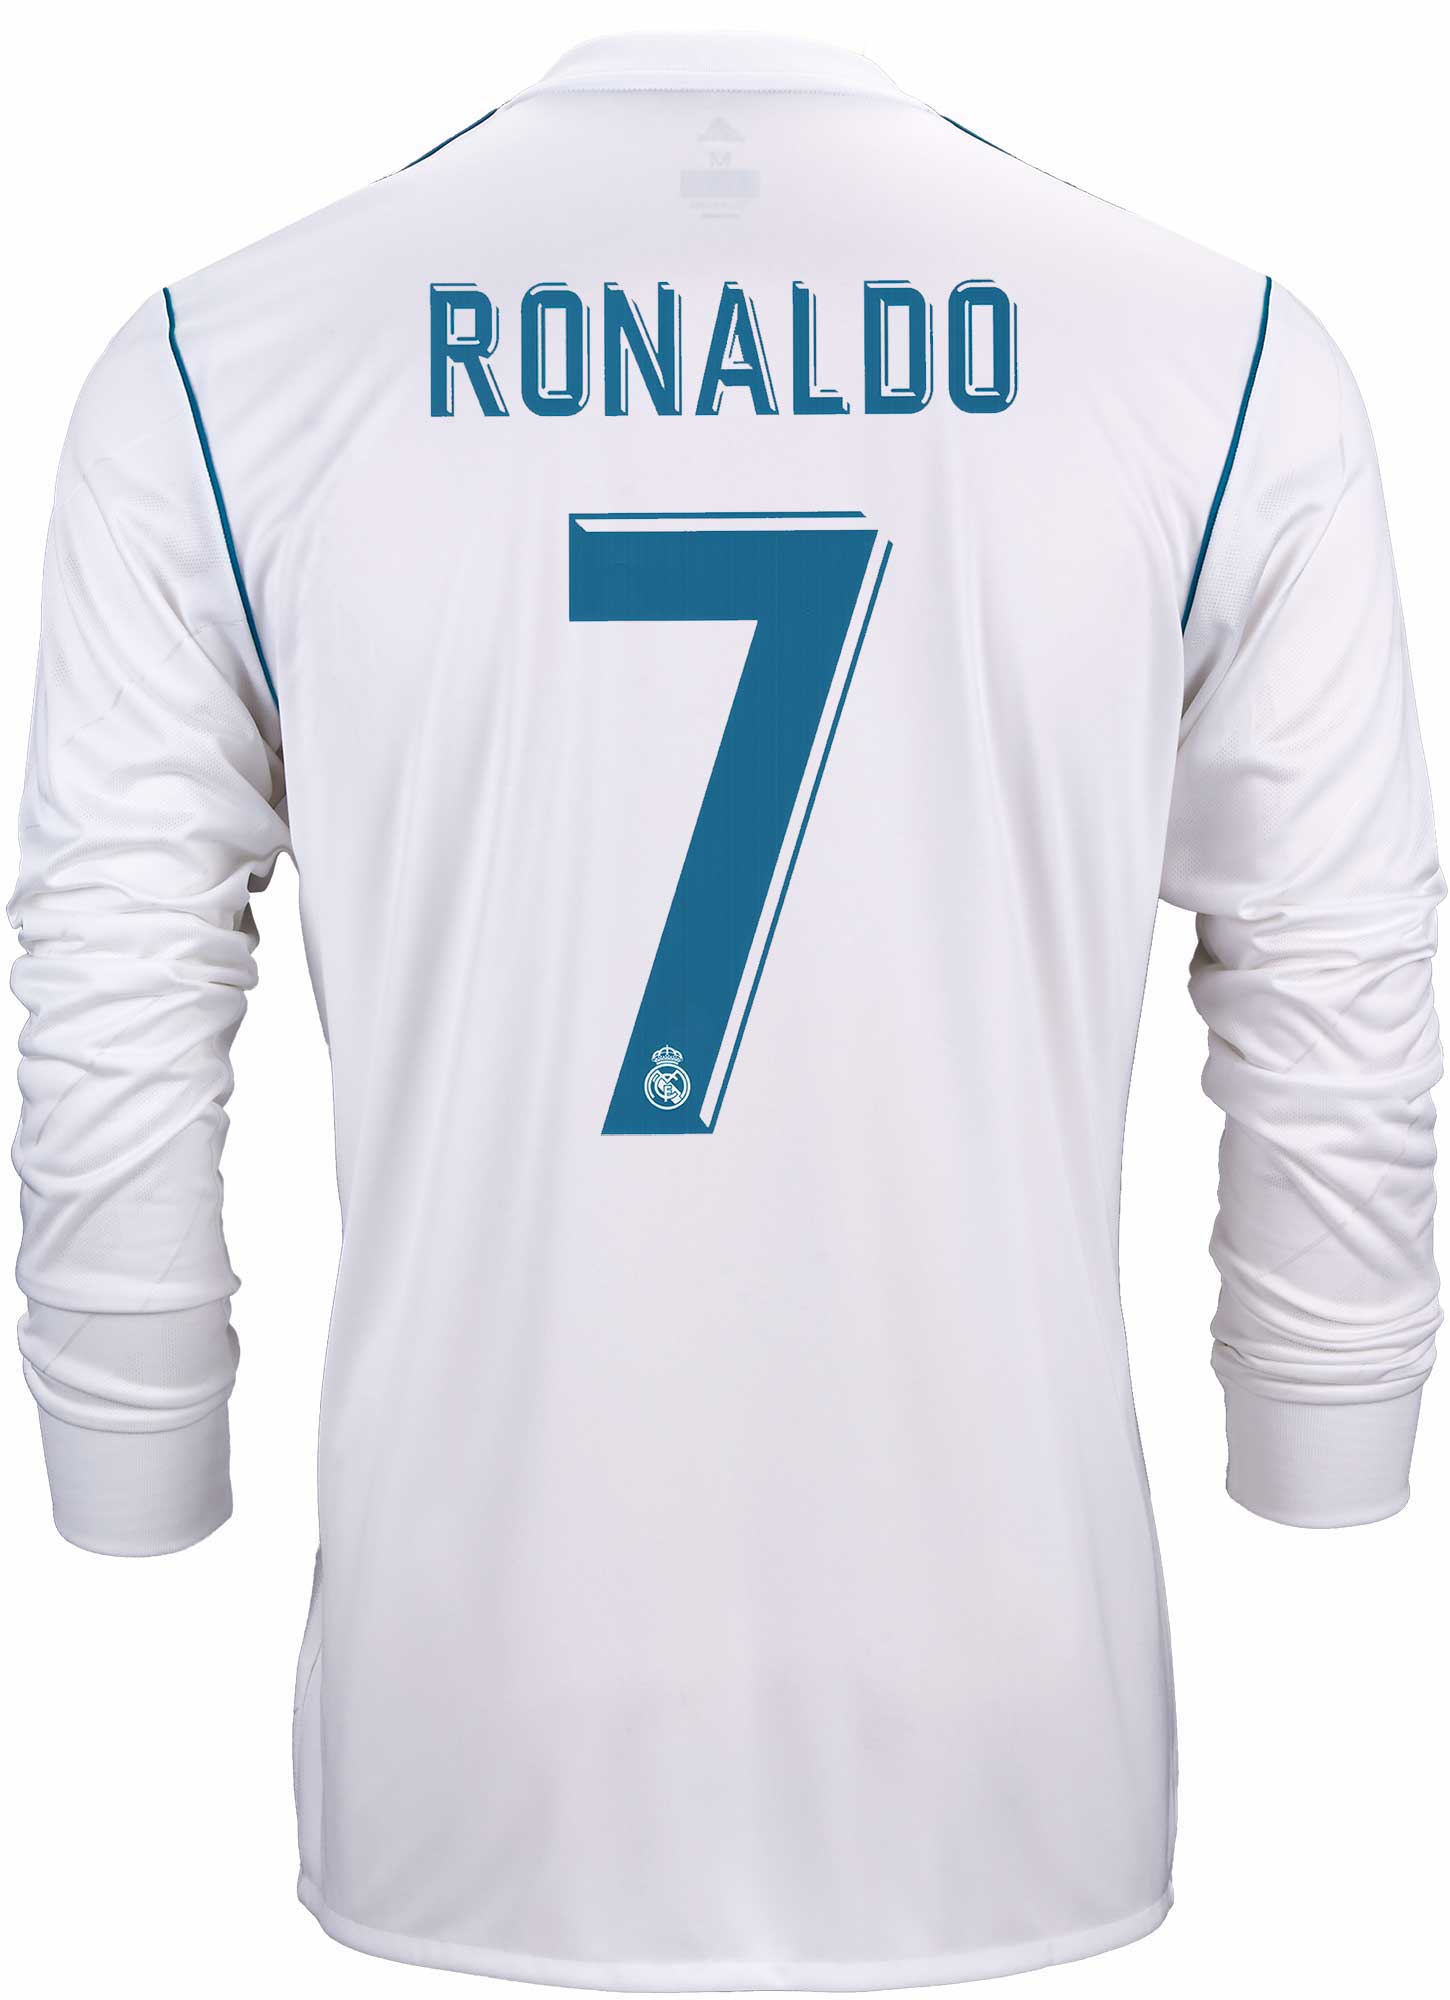 cristiano ronaldo long sleeve jersey